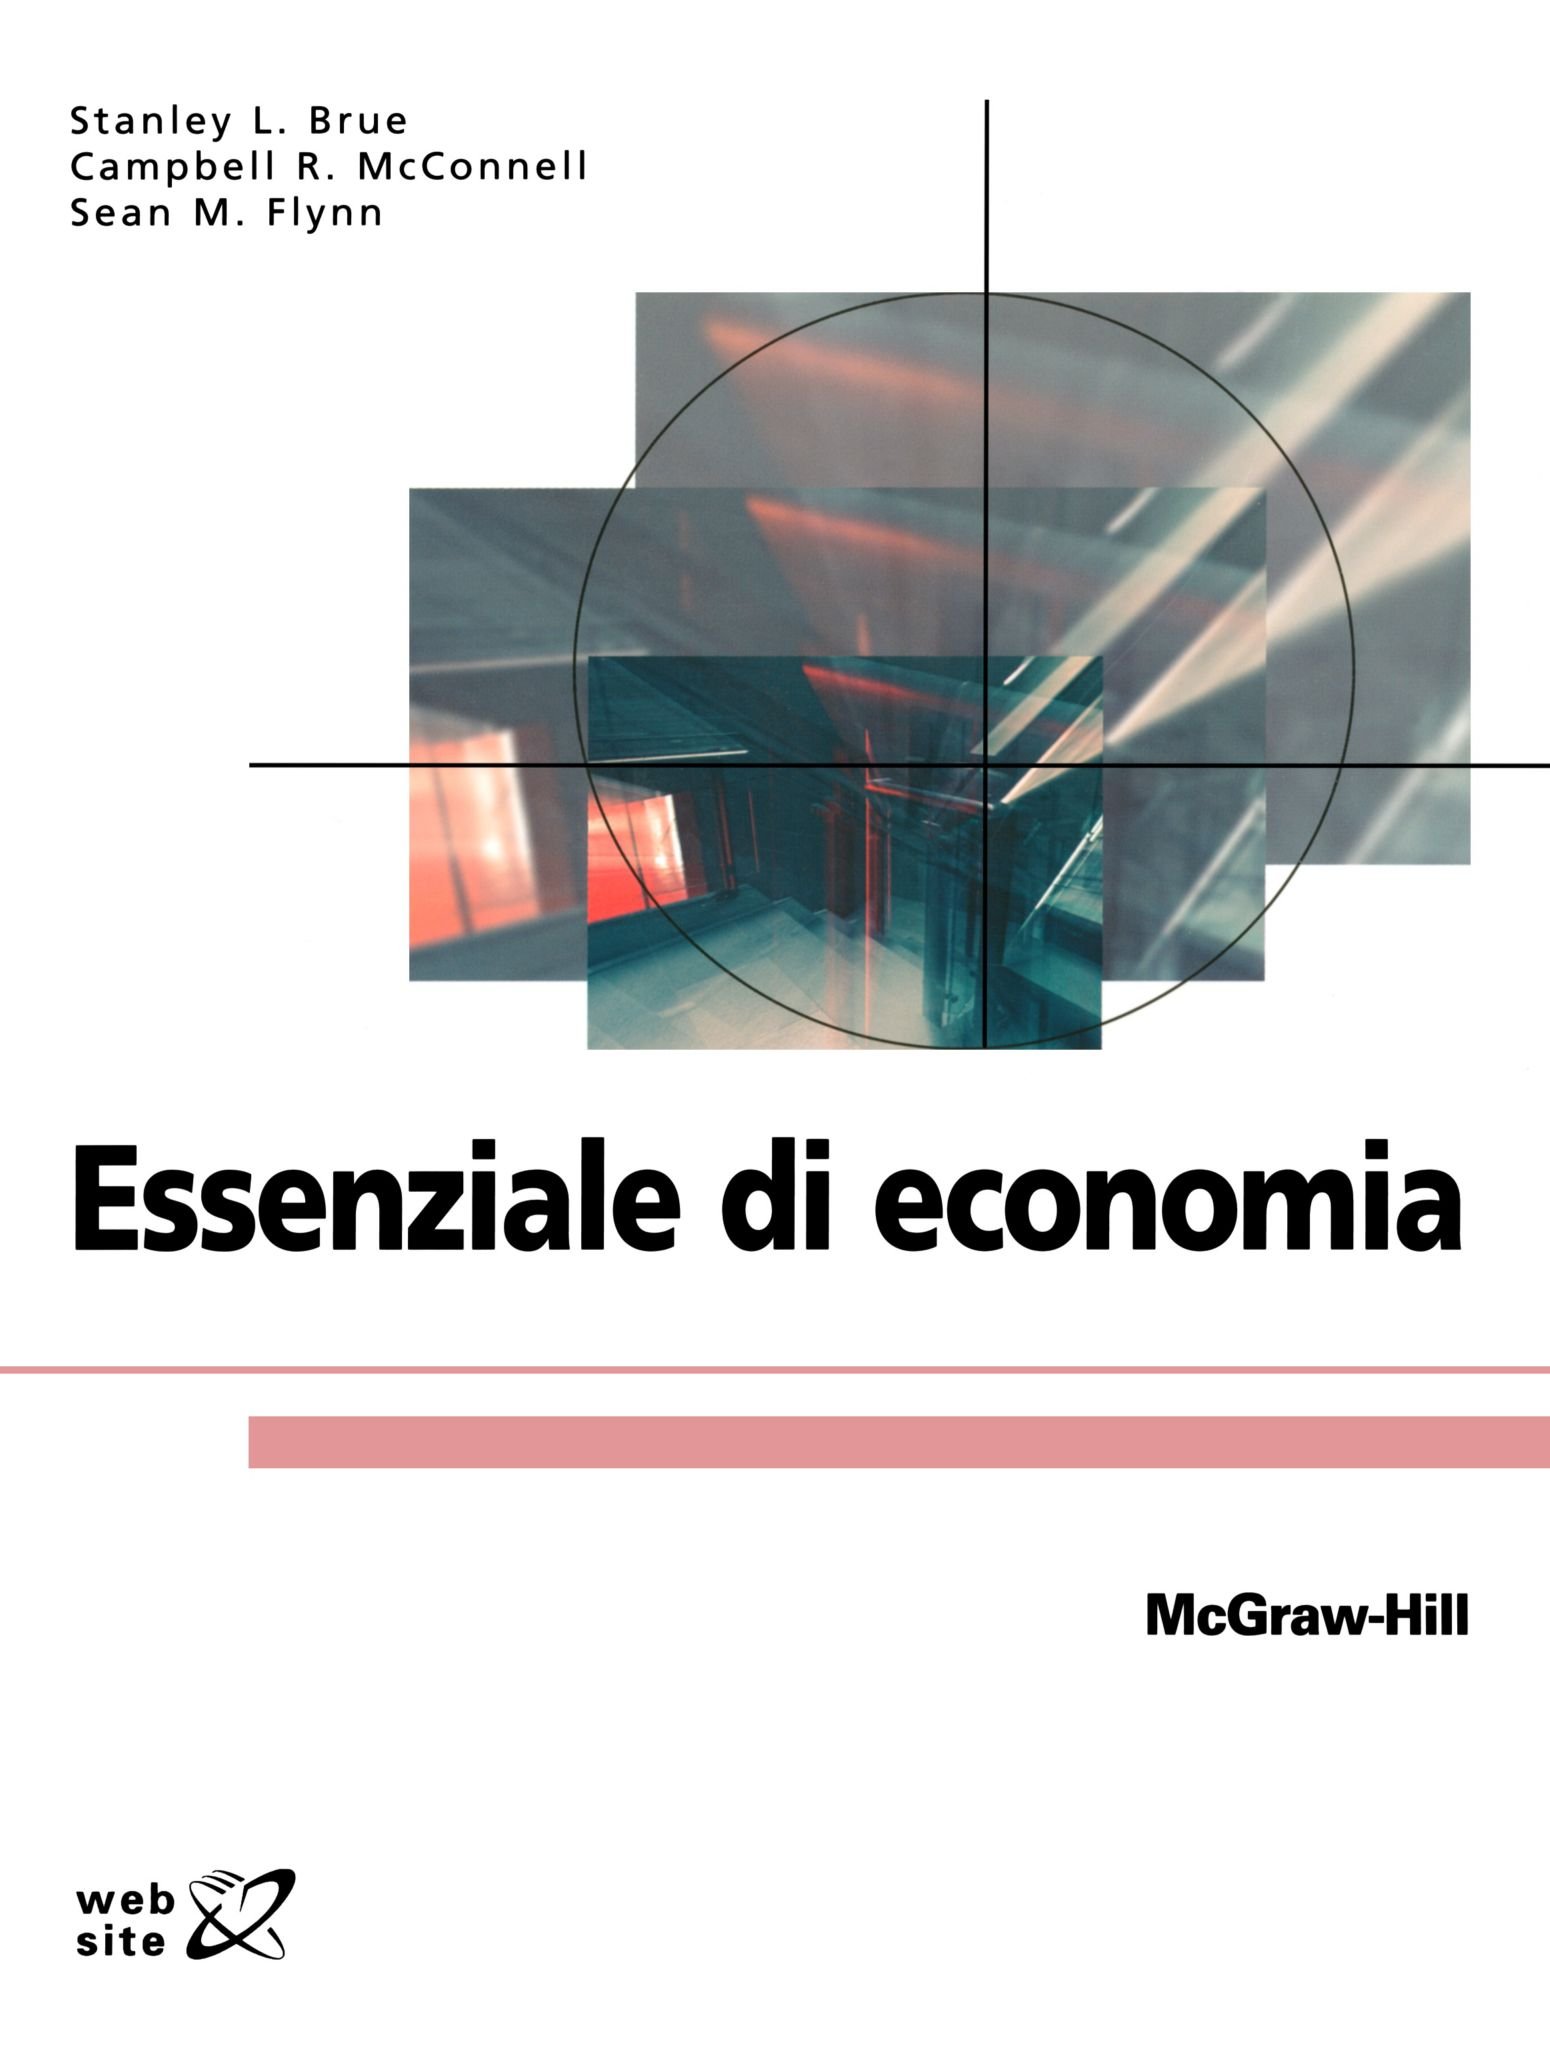 essenziale di economia mankiw pdf